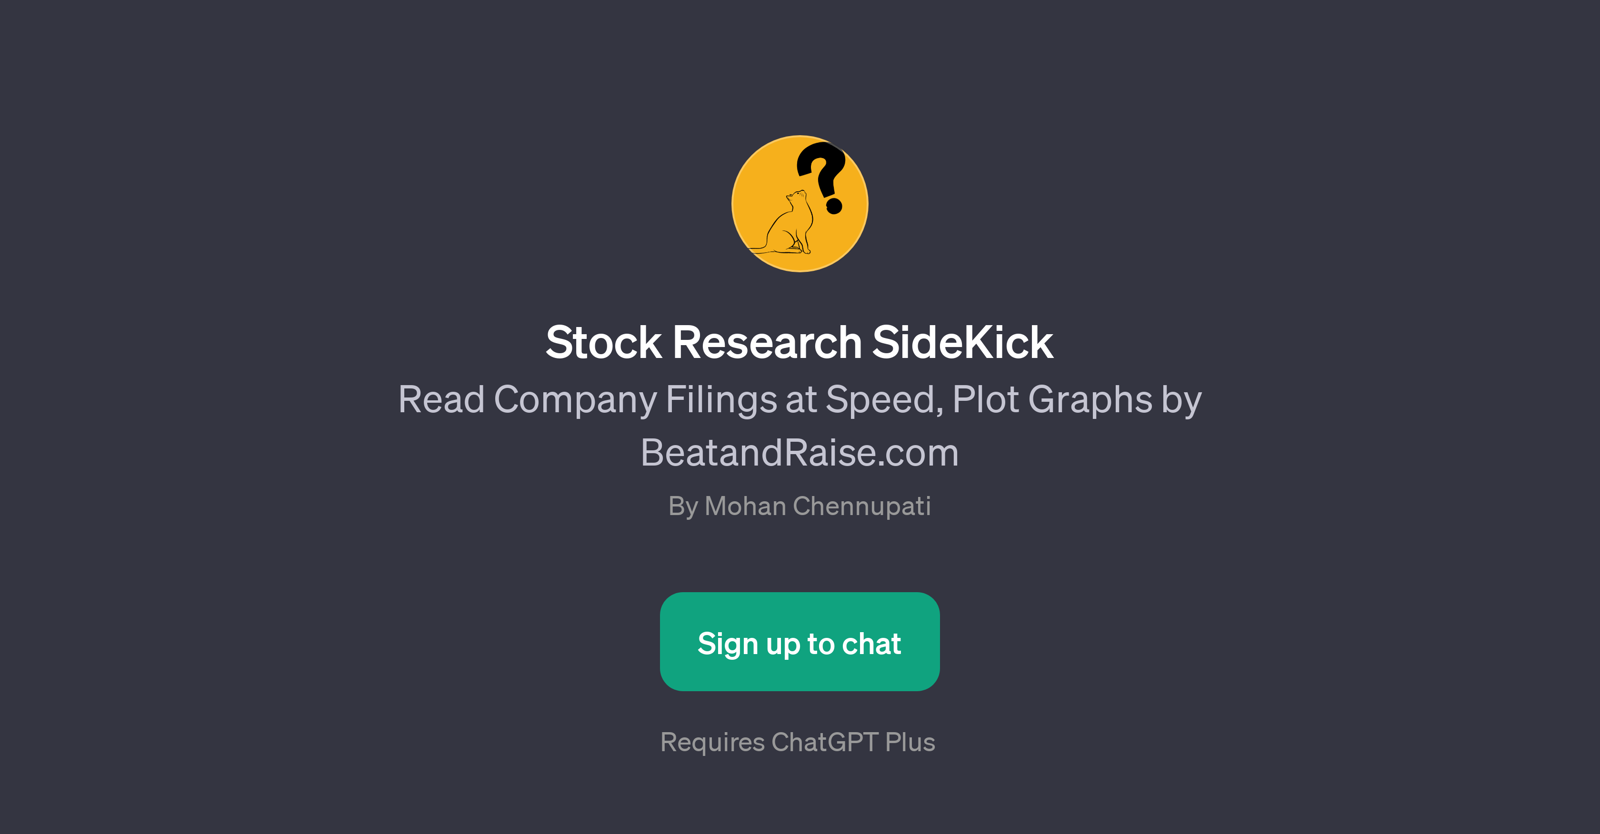 Stock Research SideKick website